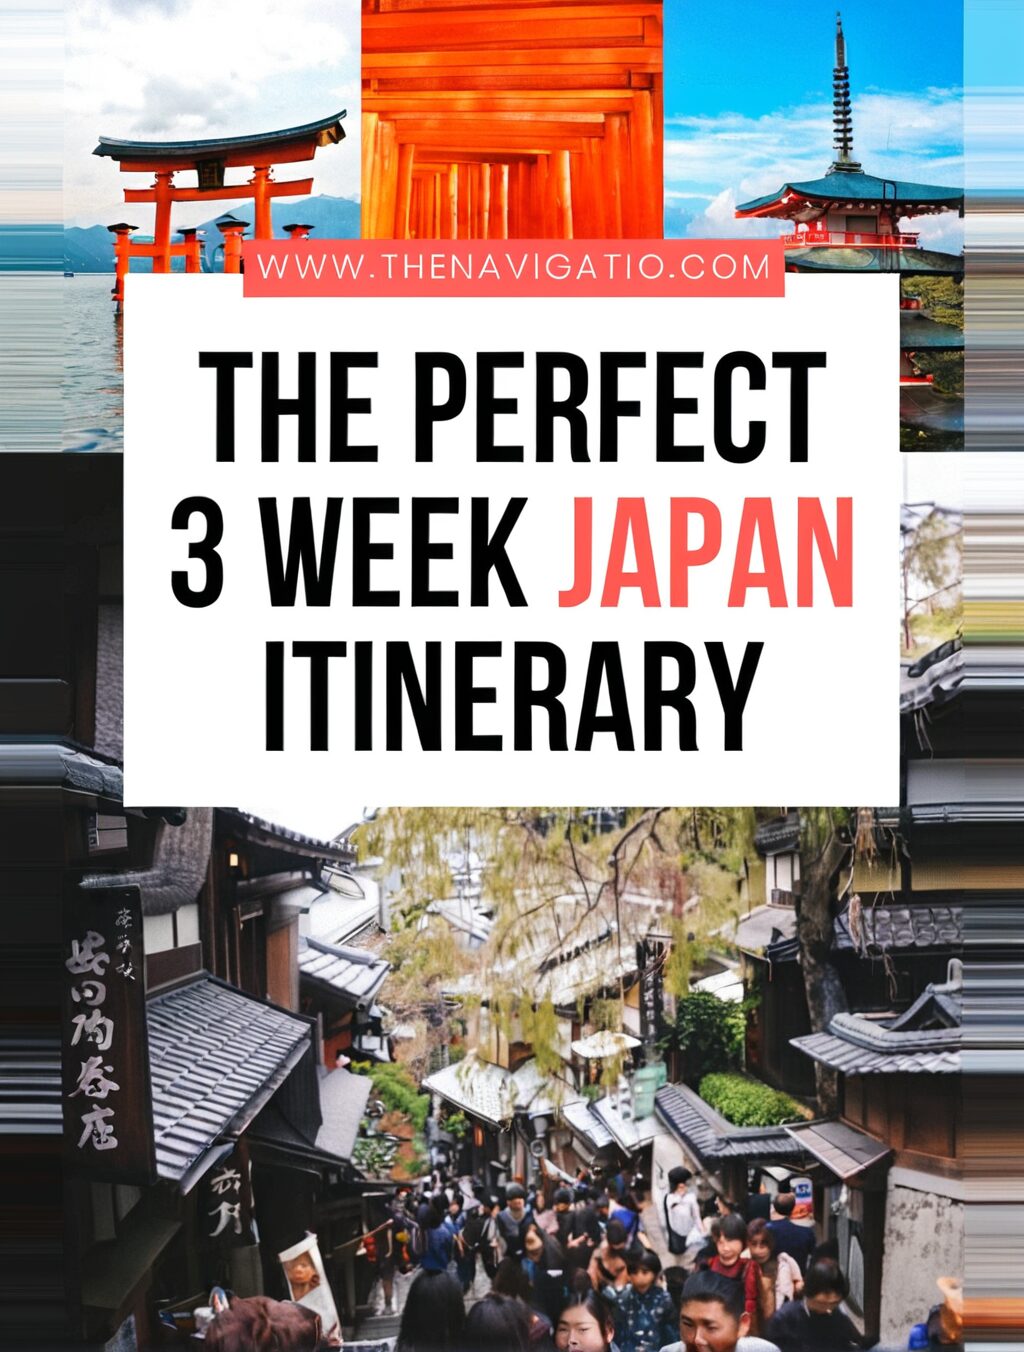 japan 3 week itinerary reddit